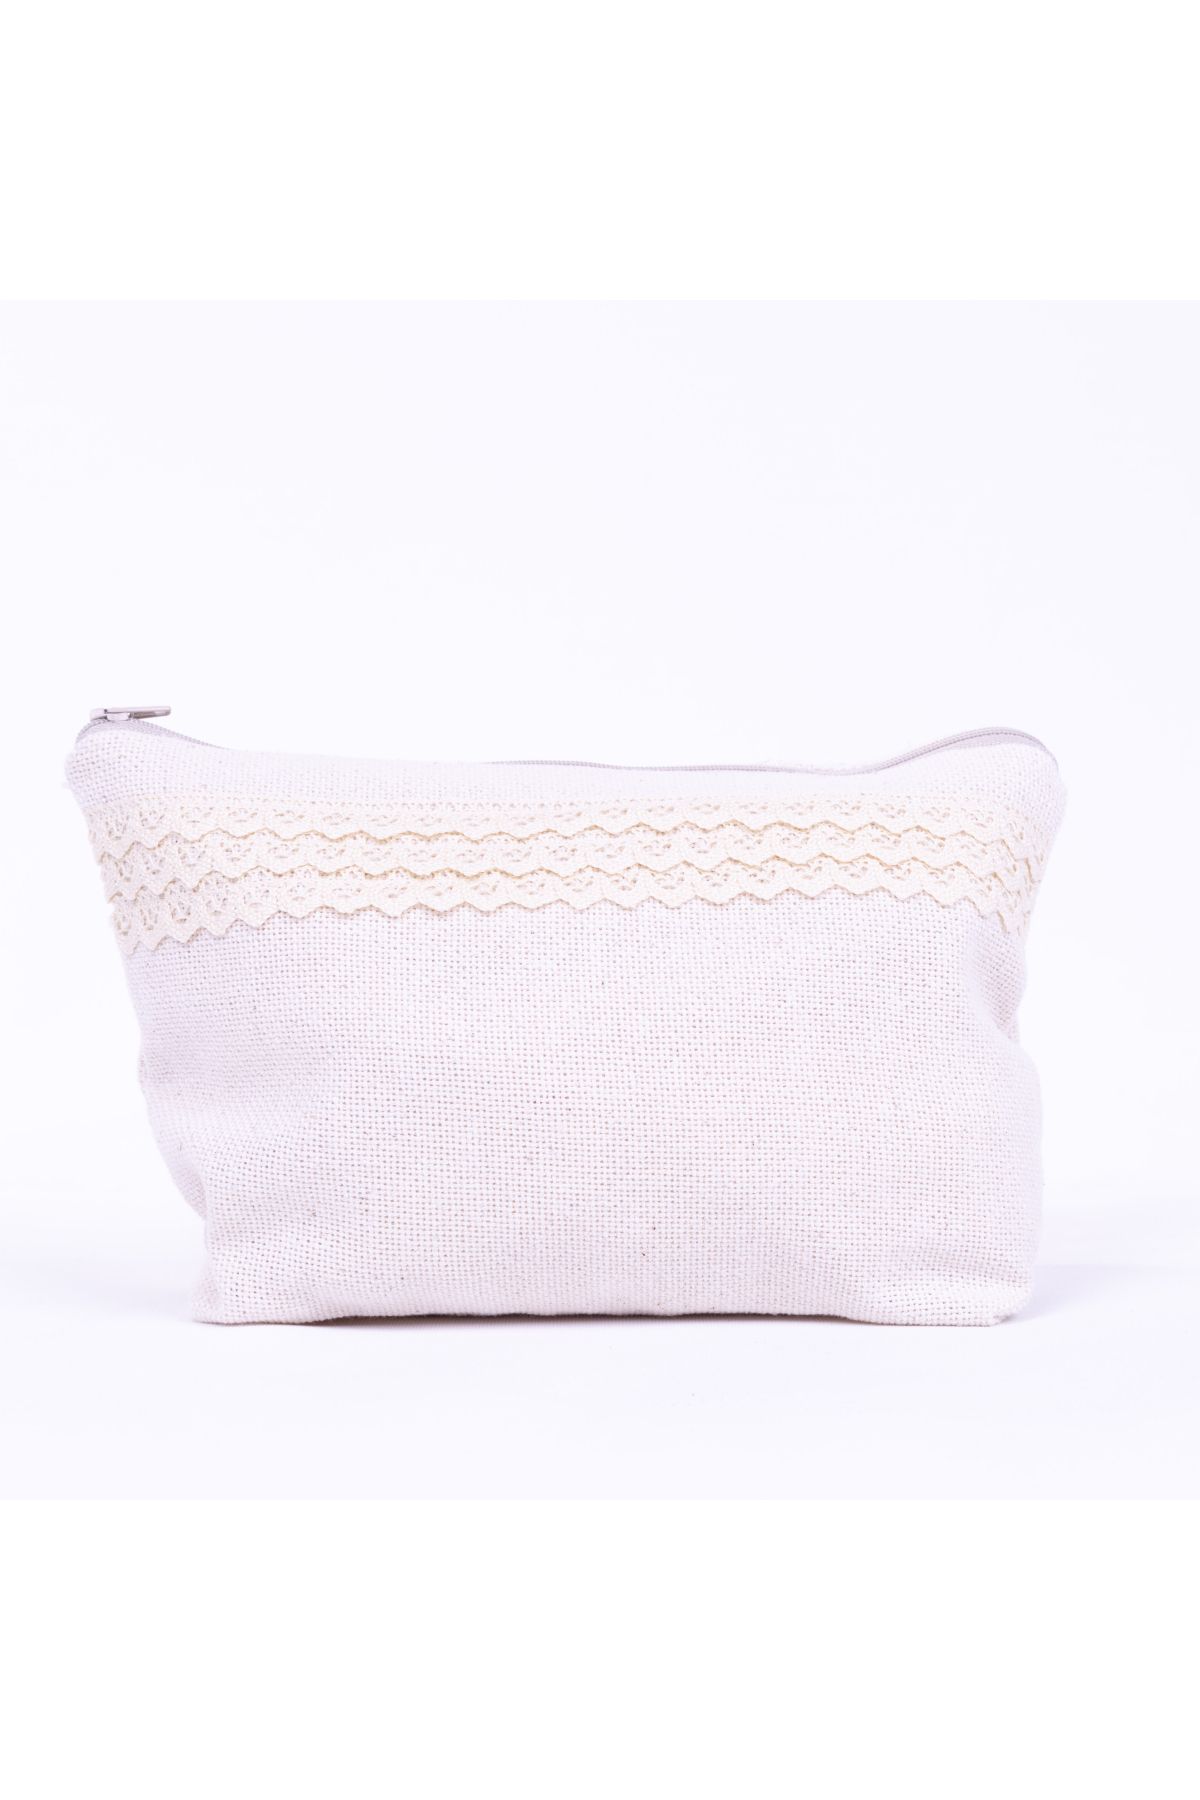 Bimotif Cendere kumaştan dantel şerit detaylı krem makyaj çantası